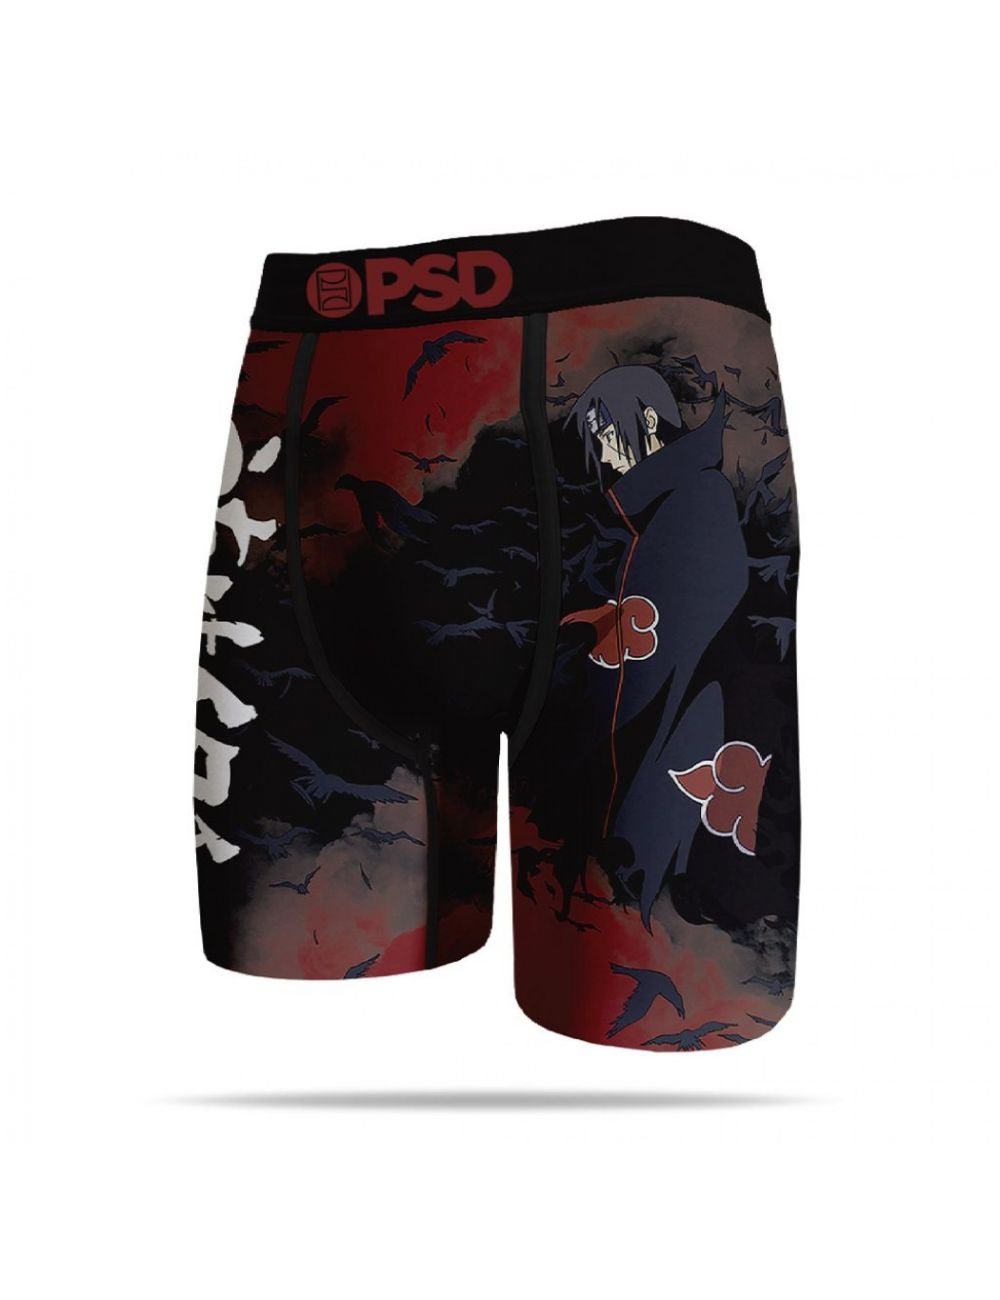 Naruto Shippuden Tsukuyomi Karasu Crows Itachi Men's Boxer Briefs